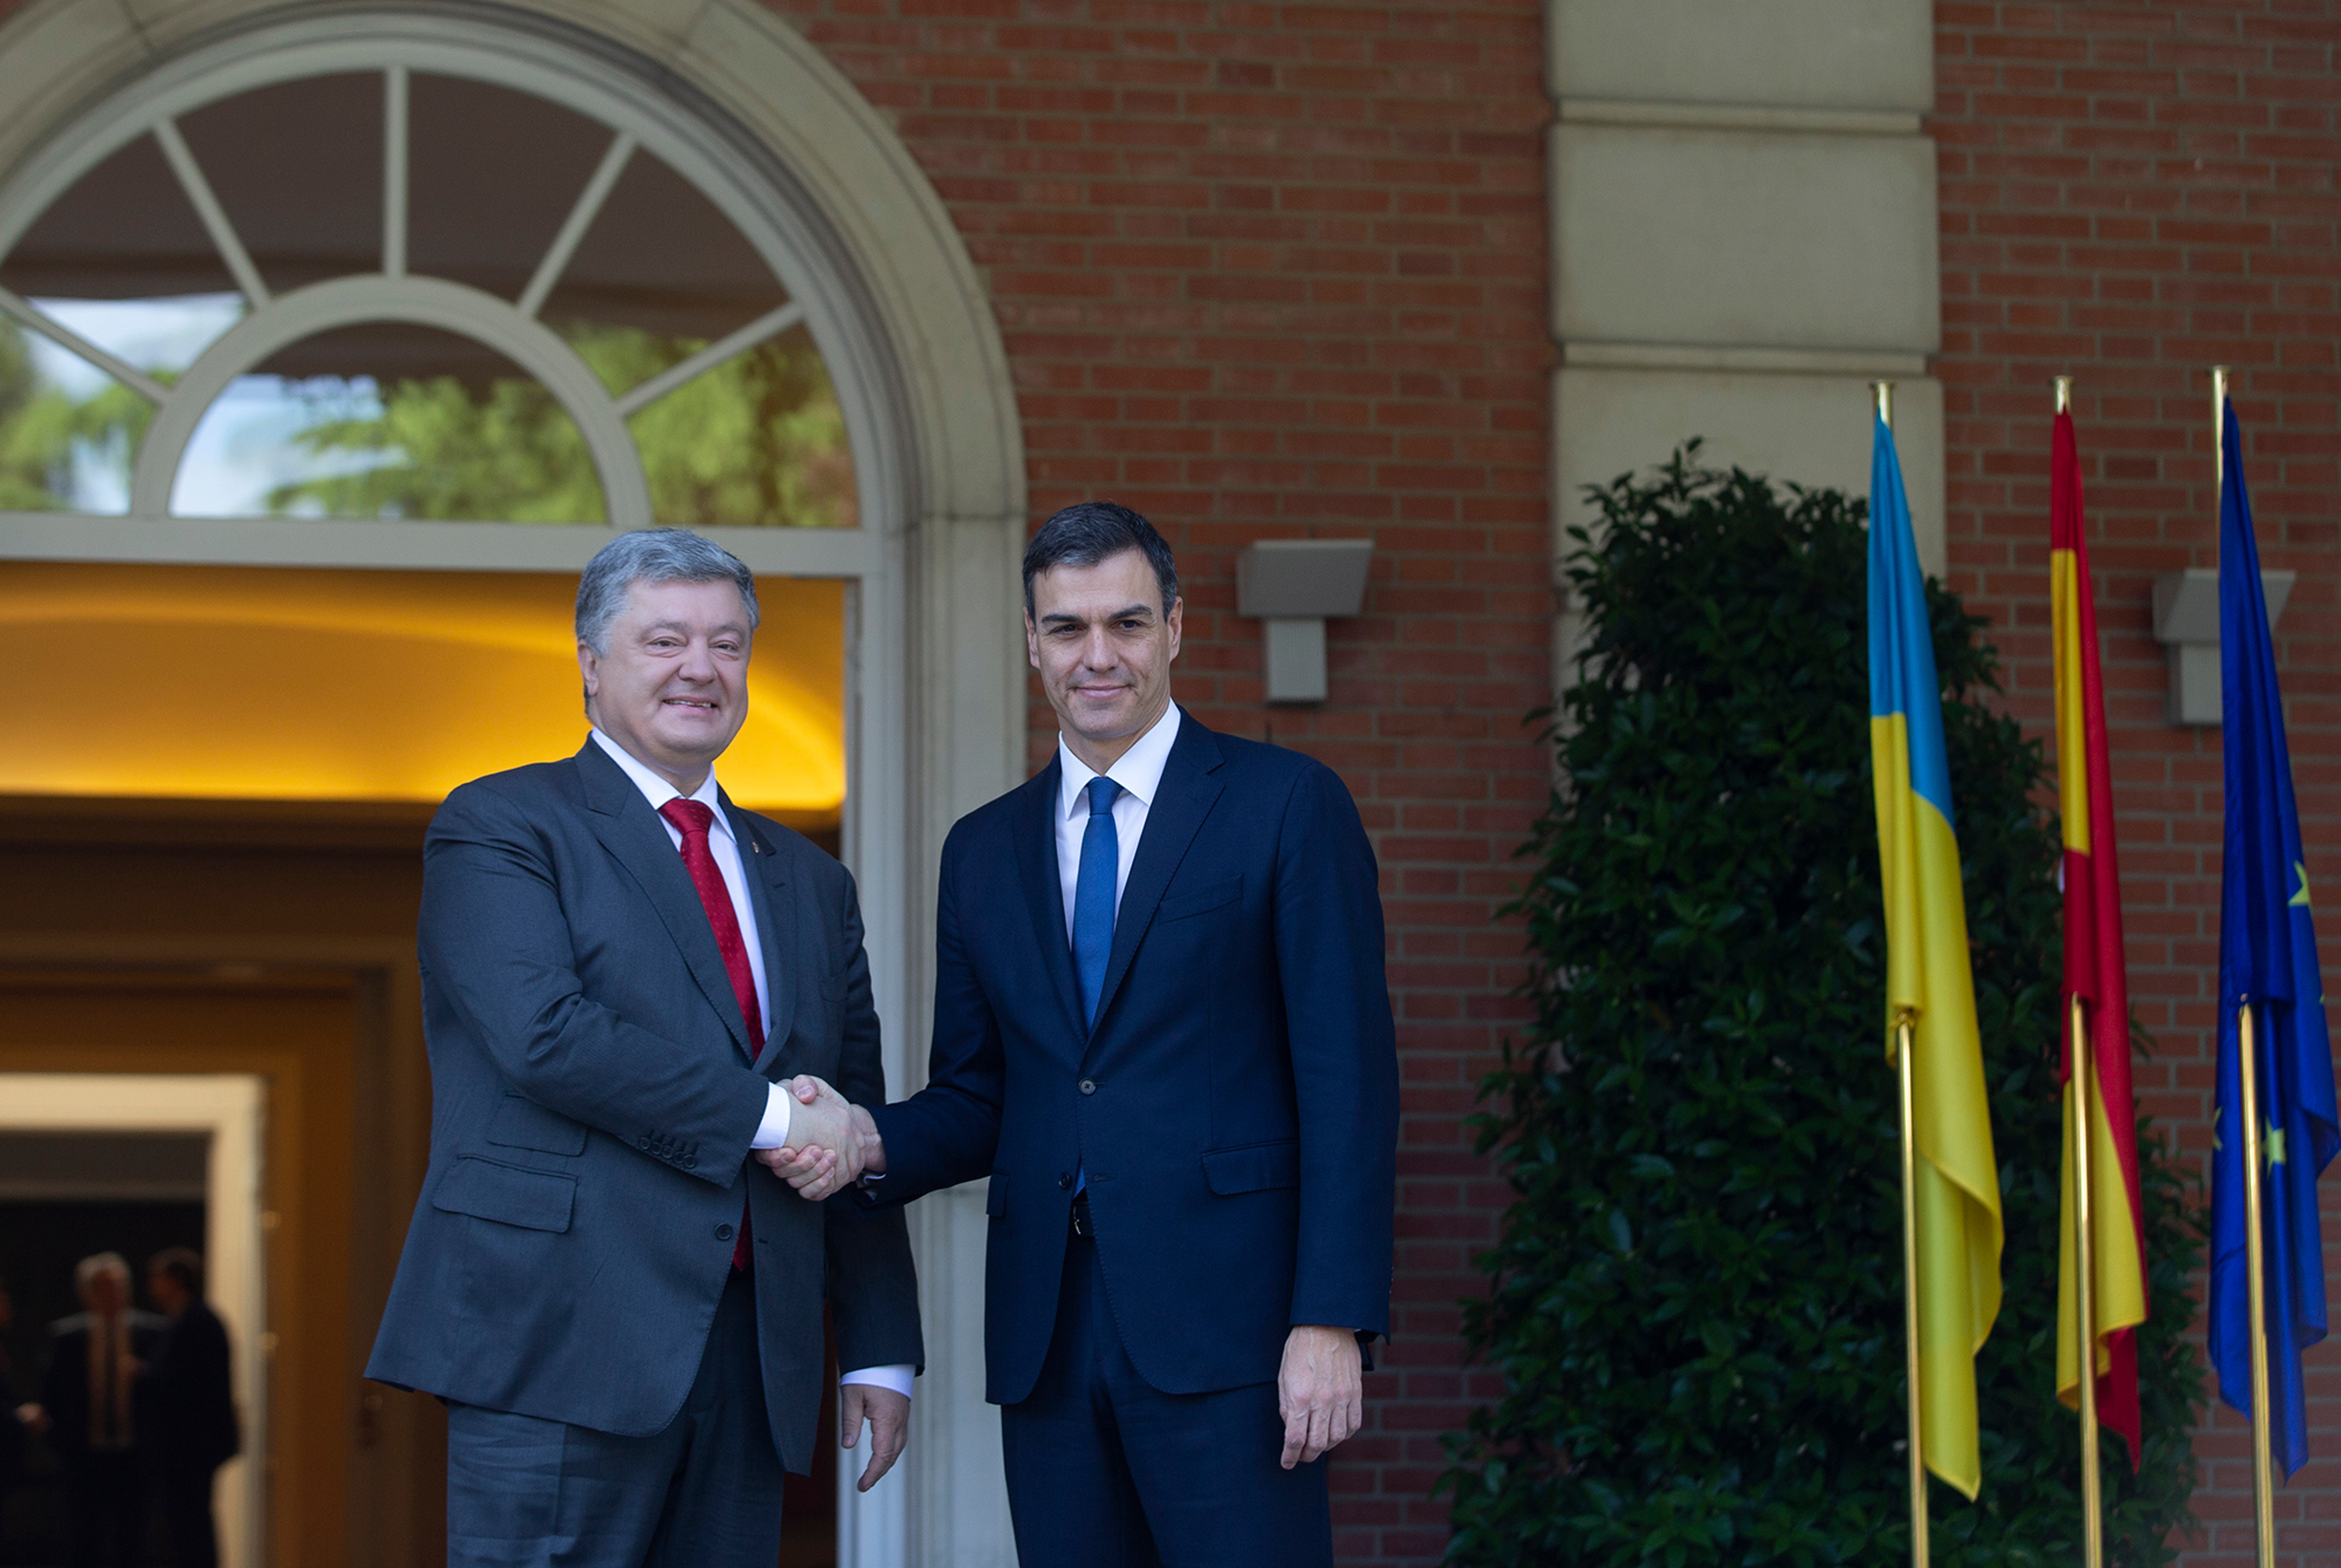 El president espanyol donant la mà al president d'Ucraïna davant del Palau de la Moncloa. Ucraïna va fer un referèndum d'autodeterminació i va proclamar unilateralment la independència el 1991